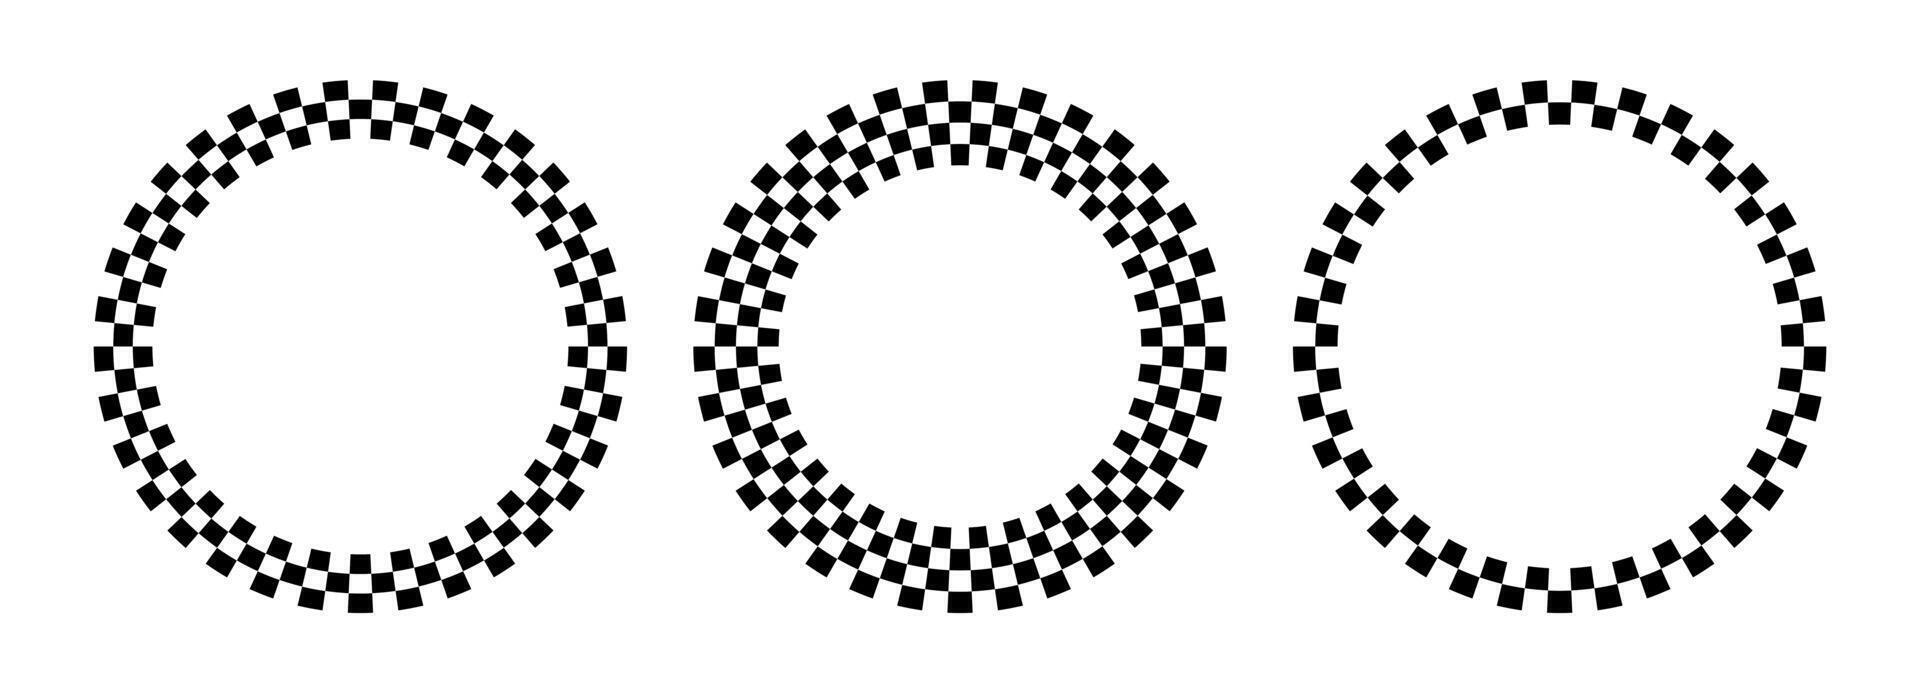 Kreis Prüfer Rahmen. runden Schach Grenzen. Design zum Text zum Start, Fertig oder Gewinner. Pack von isoliert Elemente auf ein Weiß Hintergrund. vektor